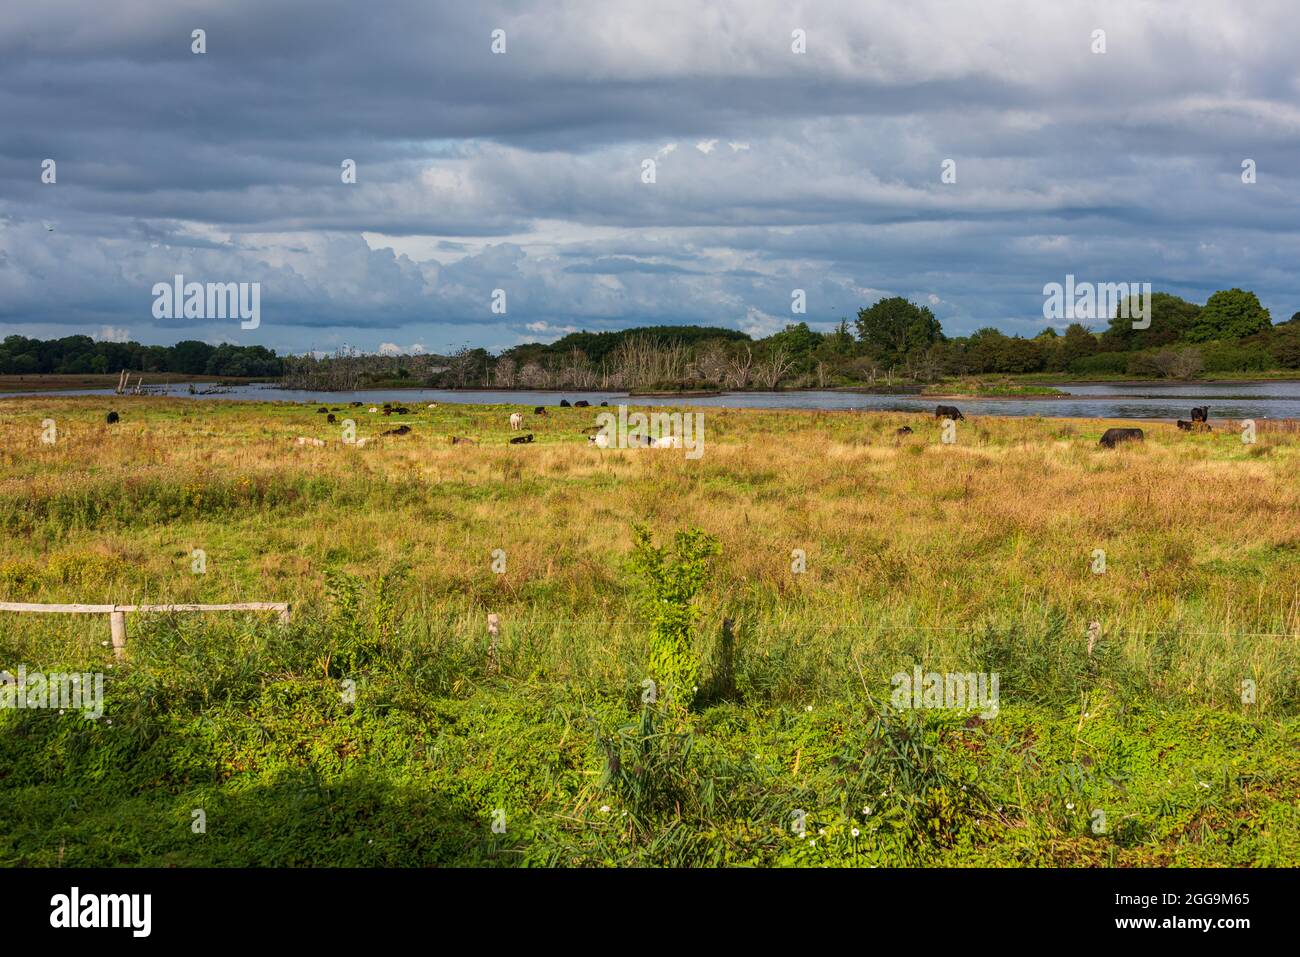 Die renaturierte Geltinger Birk an der Ostsee in Schleswig-Holstein mit ganzjährig hier lebenden Rindern an einem Sommerabend Stock Photo